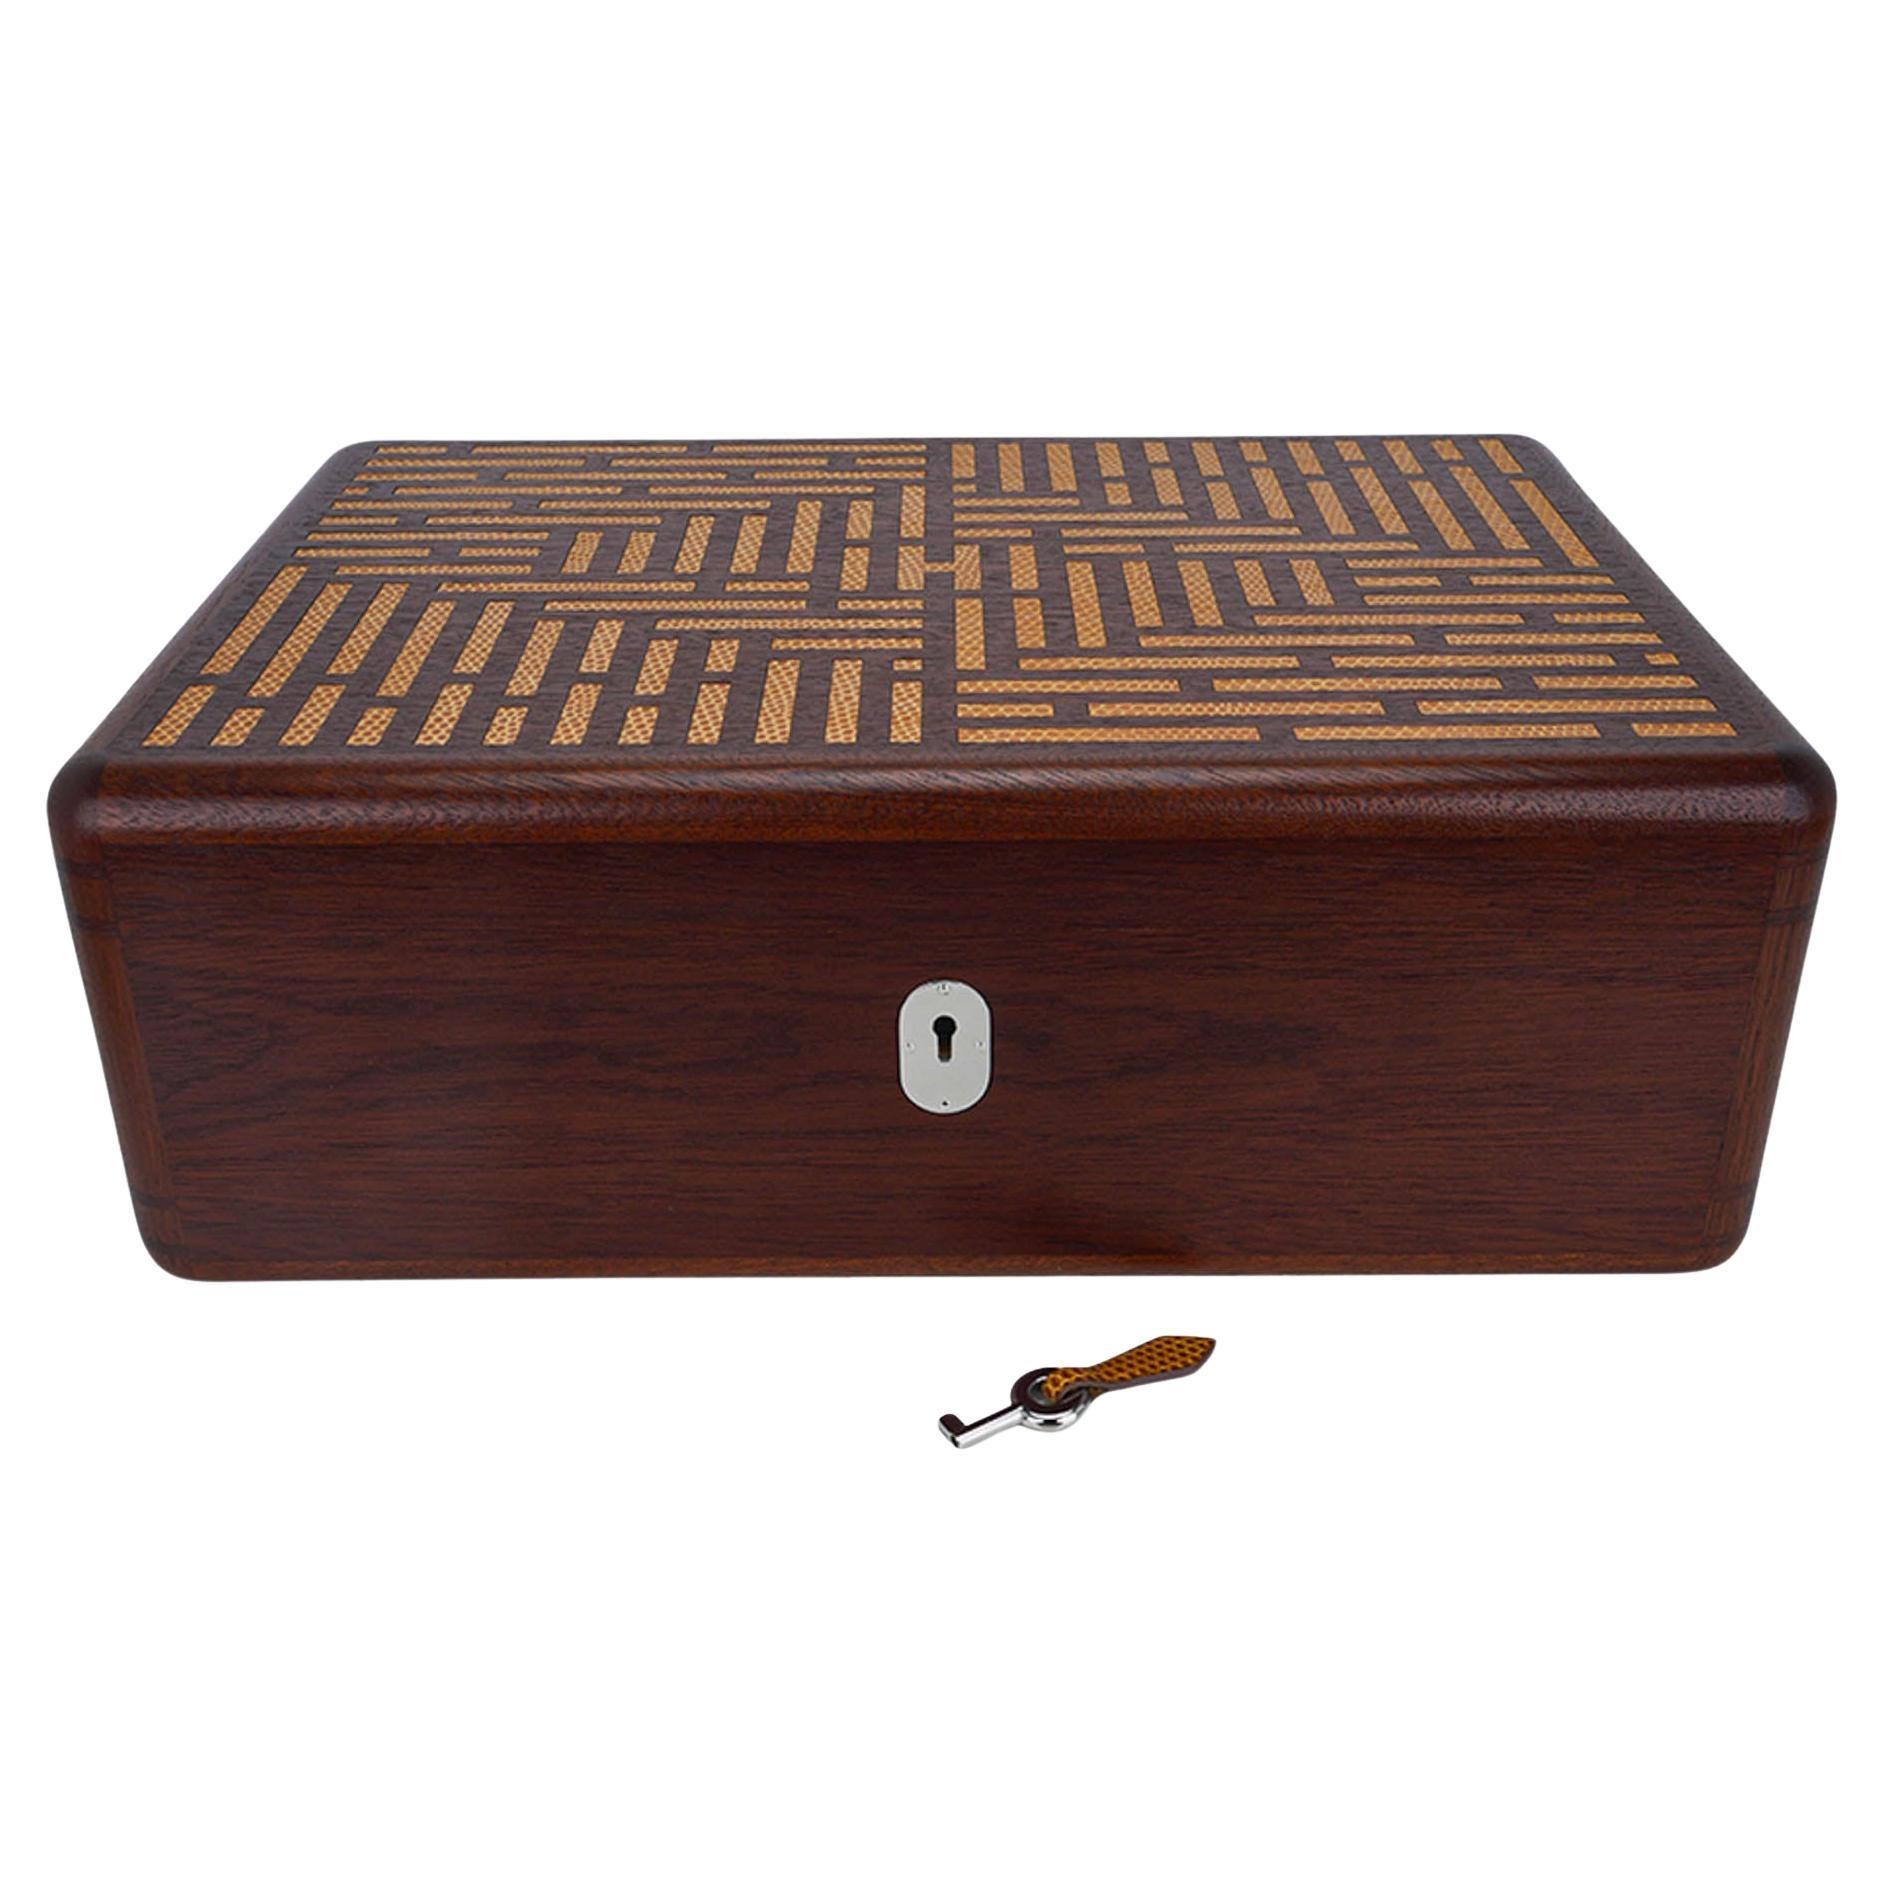 Mightychic bietet einen Hermes Coffret a Cigares Humidor Zigarrenkiste.
Aus Sycamore-Holz mit eingelegter Eidechse in Sesam.
Die Inlays bilden ein 